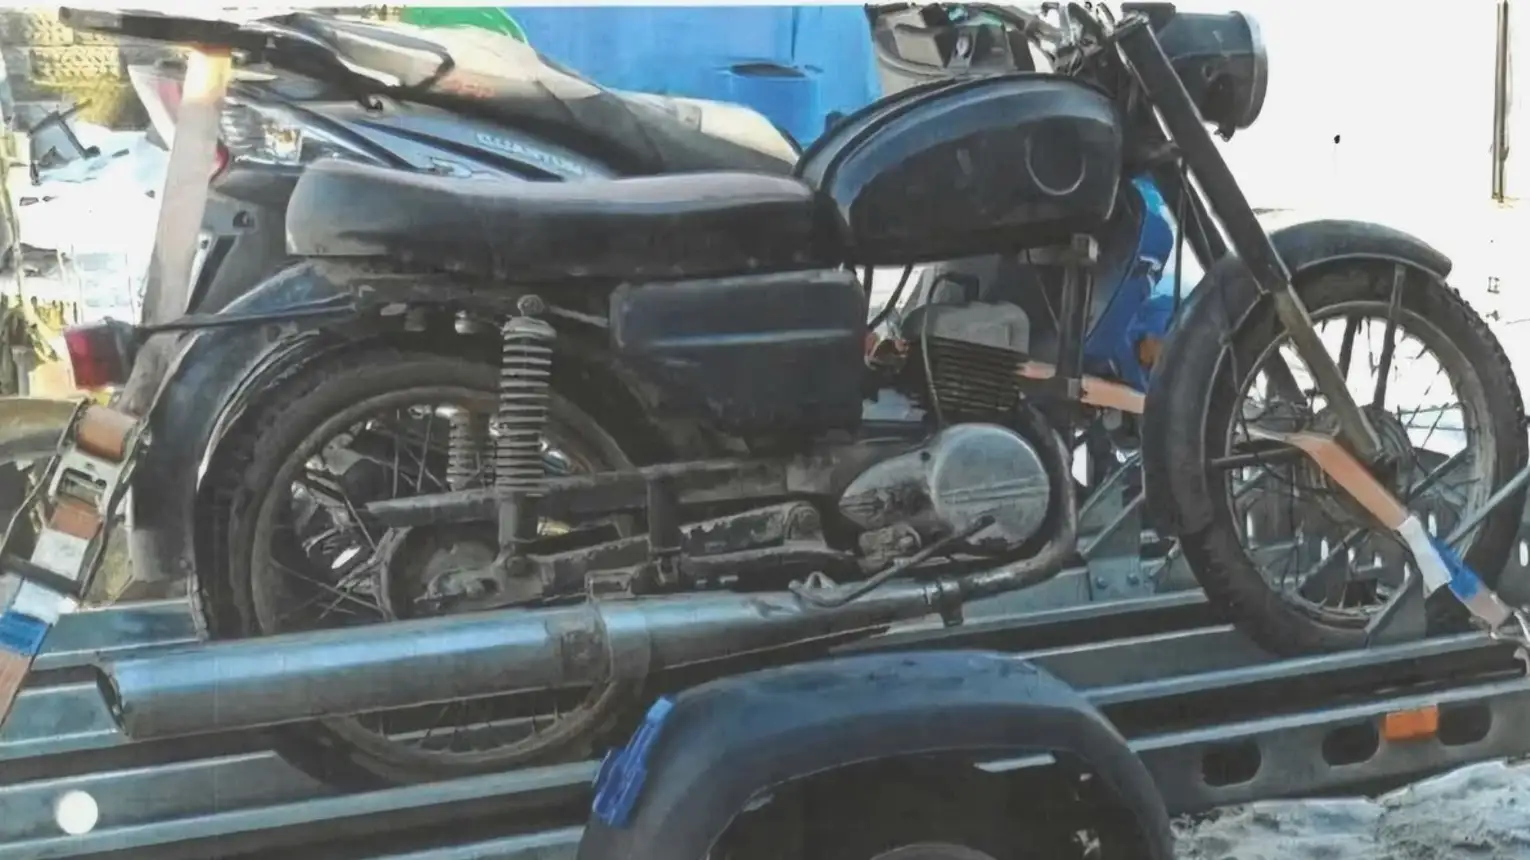 Policja szuka świadków kradzieży motocykla WSK-i